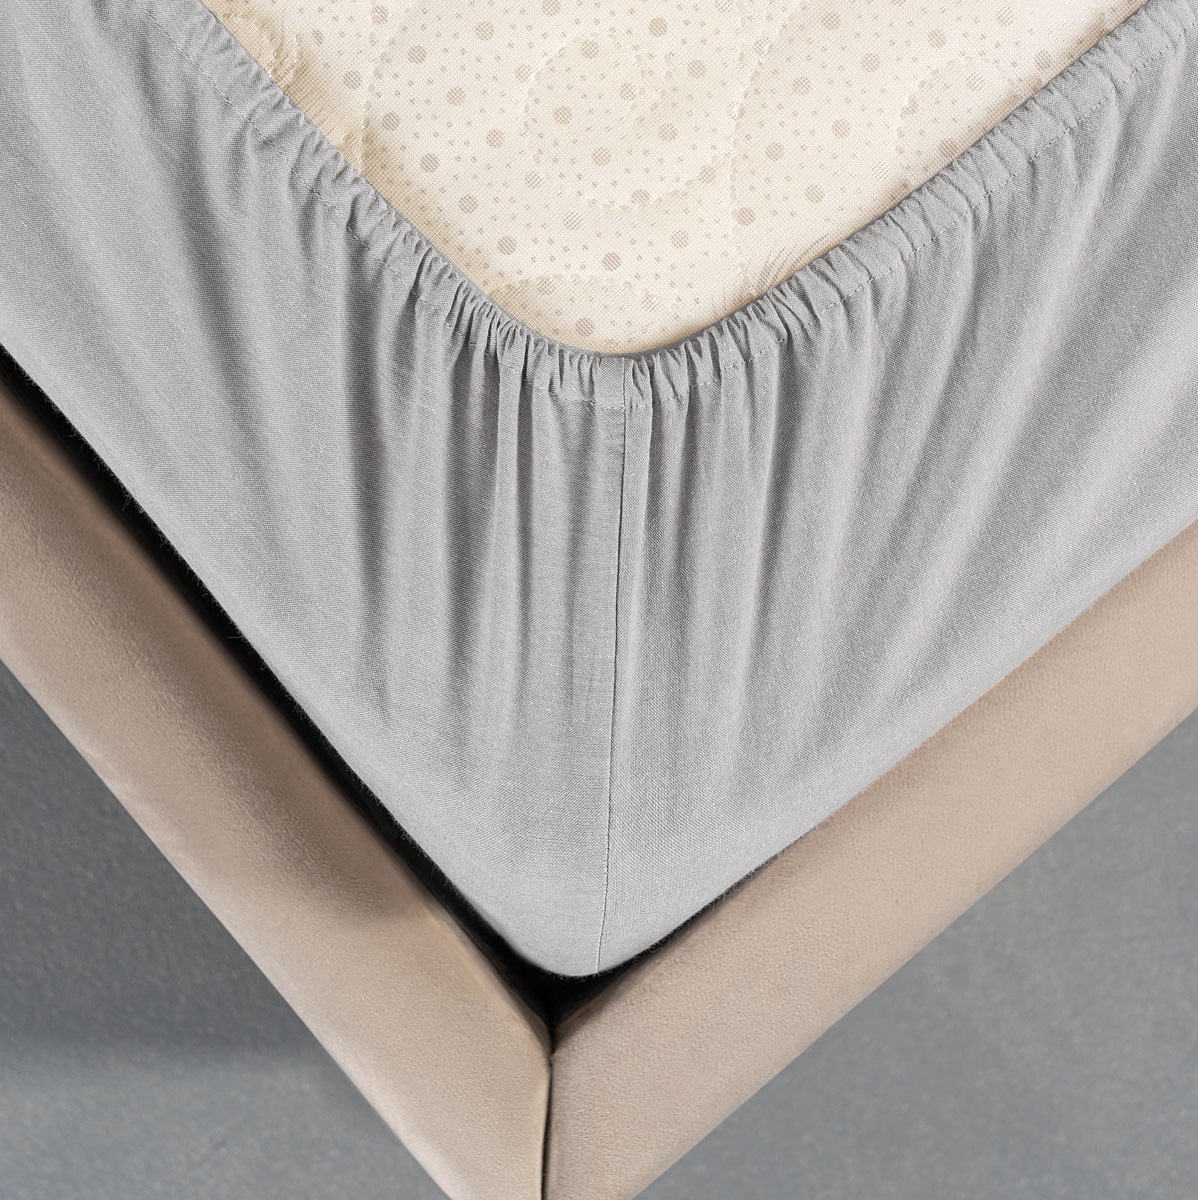 Комплект постельного белья Prime Prive Смоген Двуспальный кинг сайз светло-серый, размер Кинг сайз - фото 7